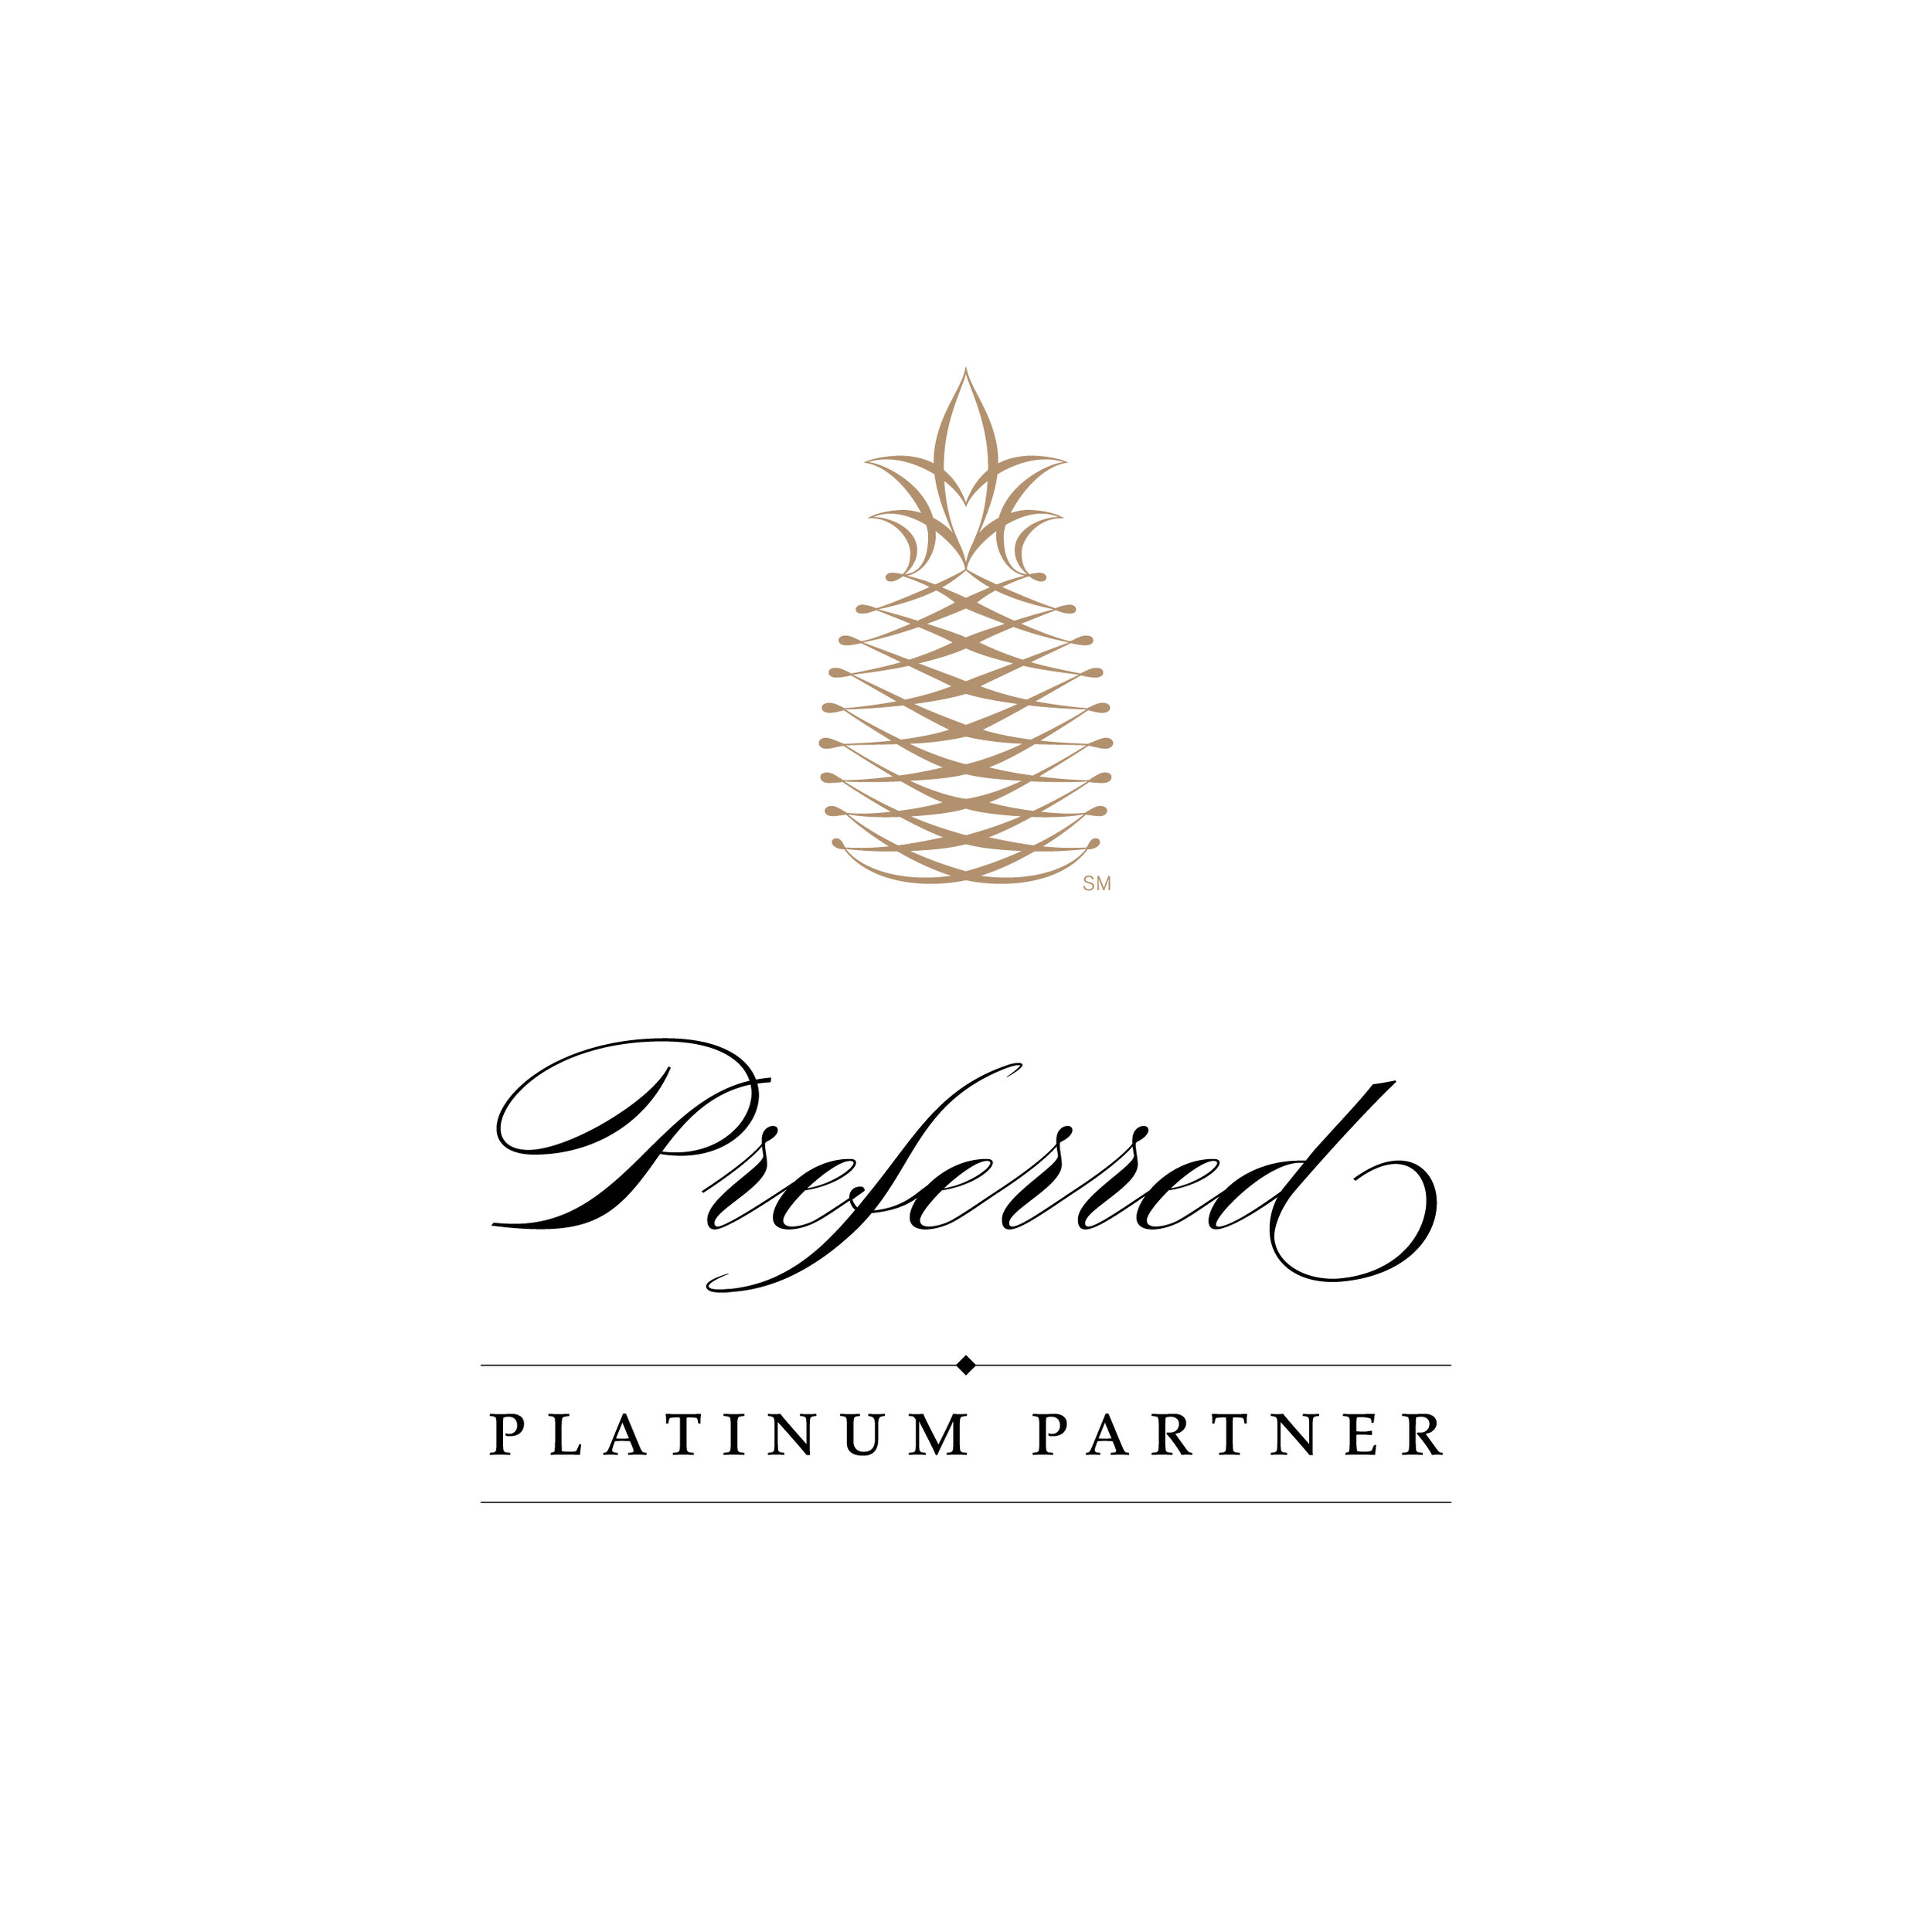 Preferred Platinum Partner Logo_Large_FNL.JPG